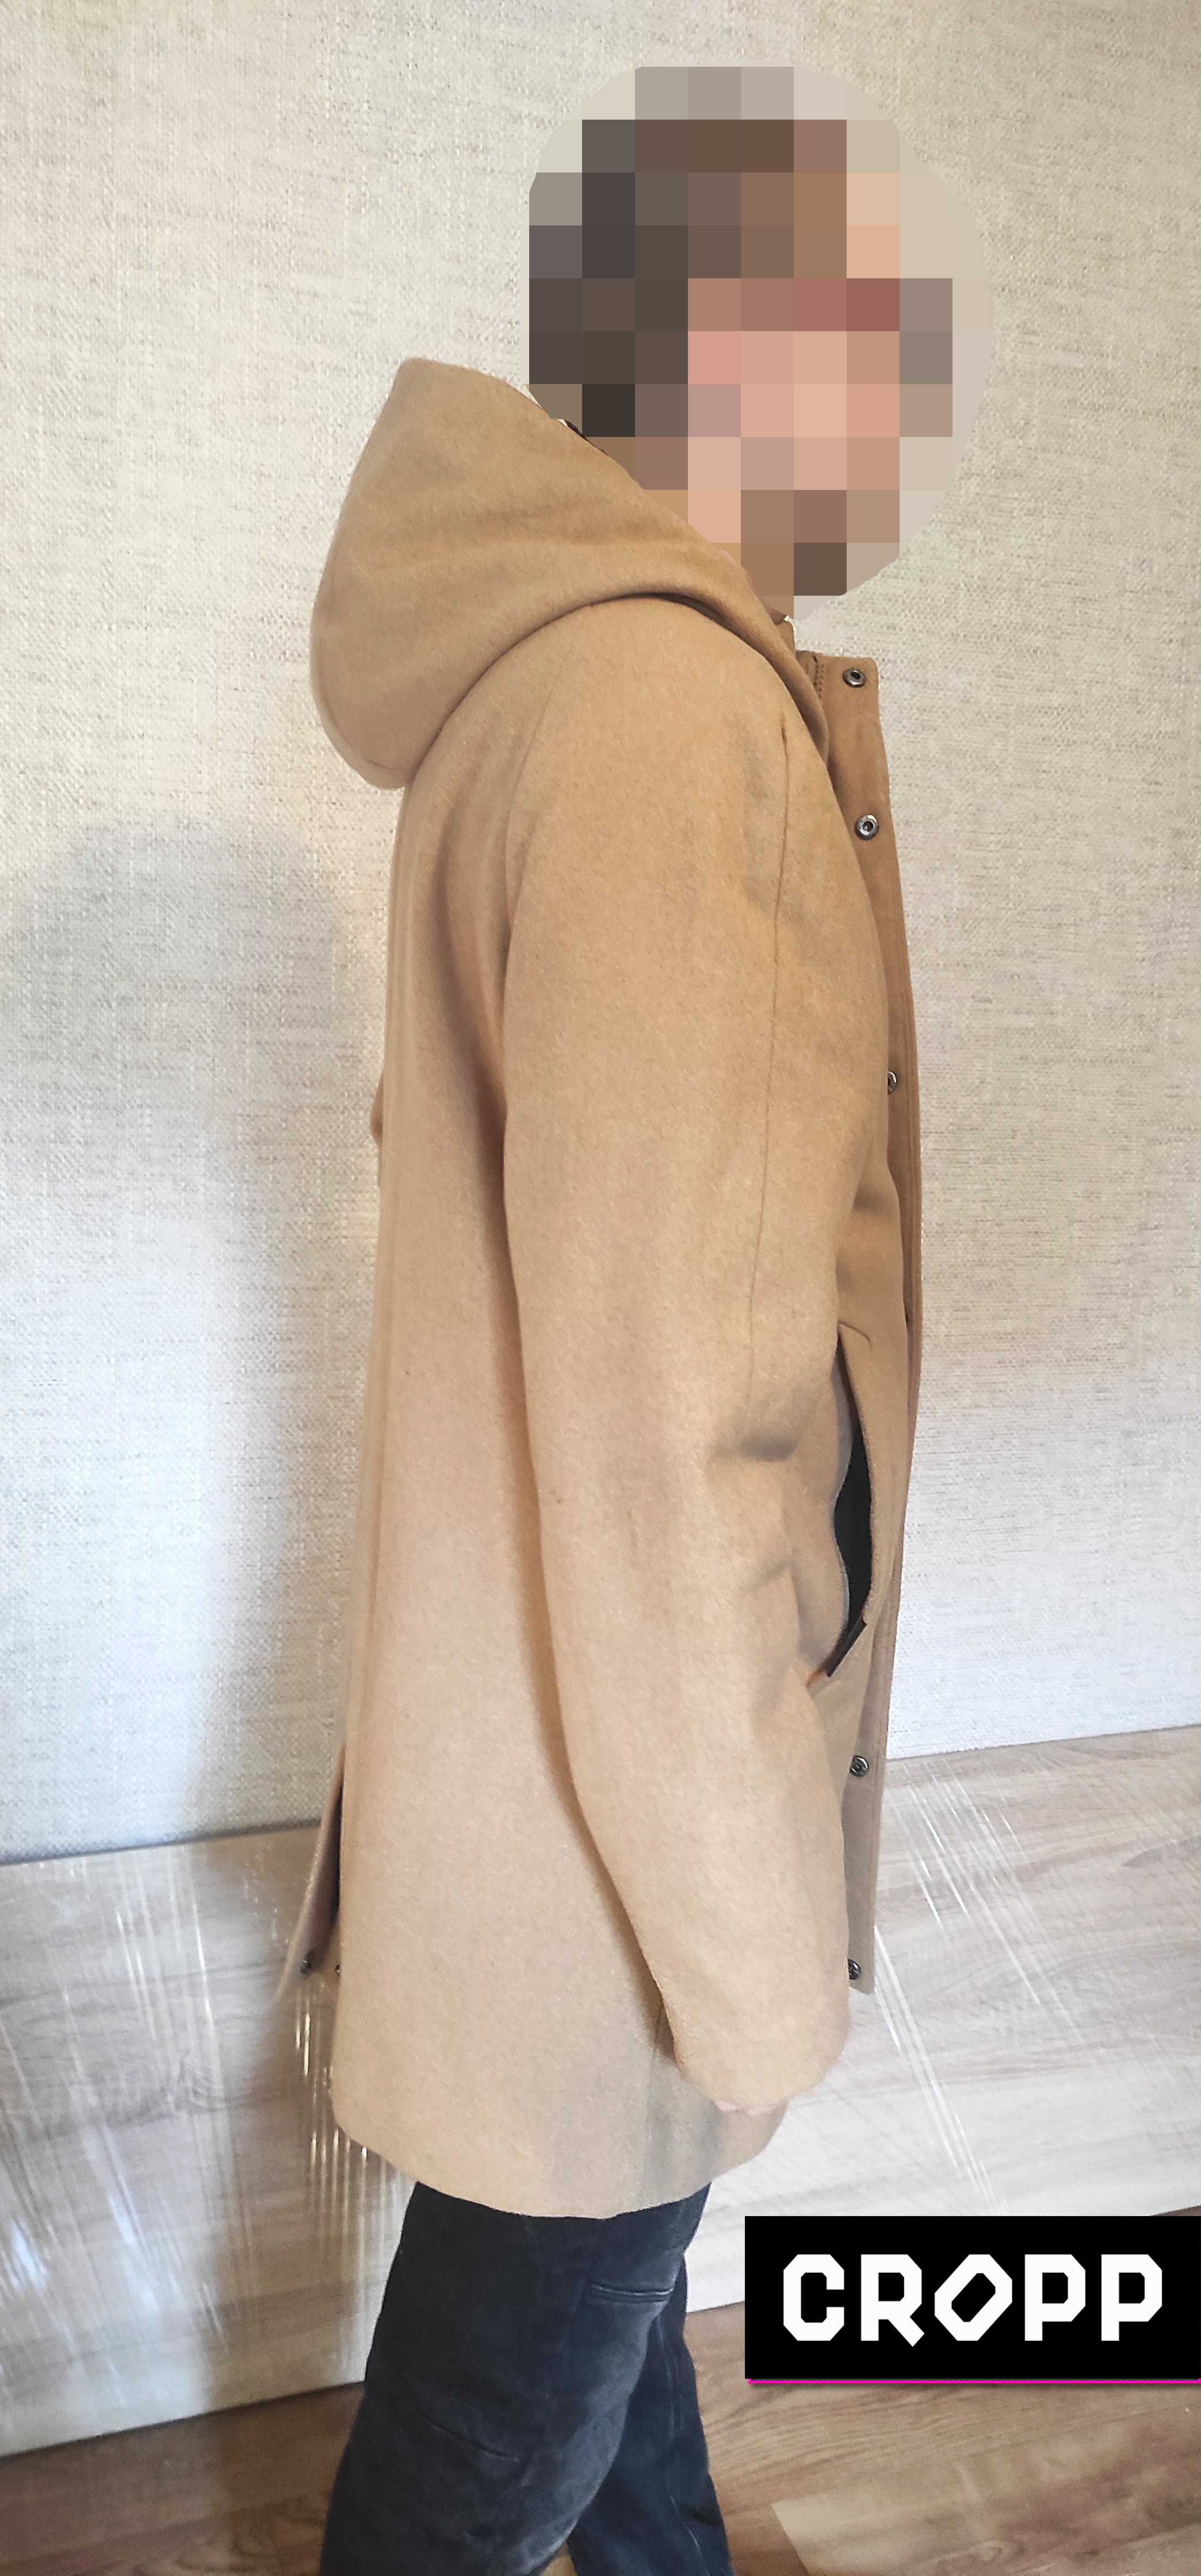 Сropp - Куртка Пальто с капюшоном (модная парка)